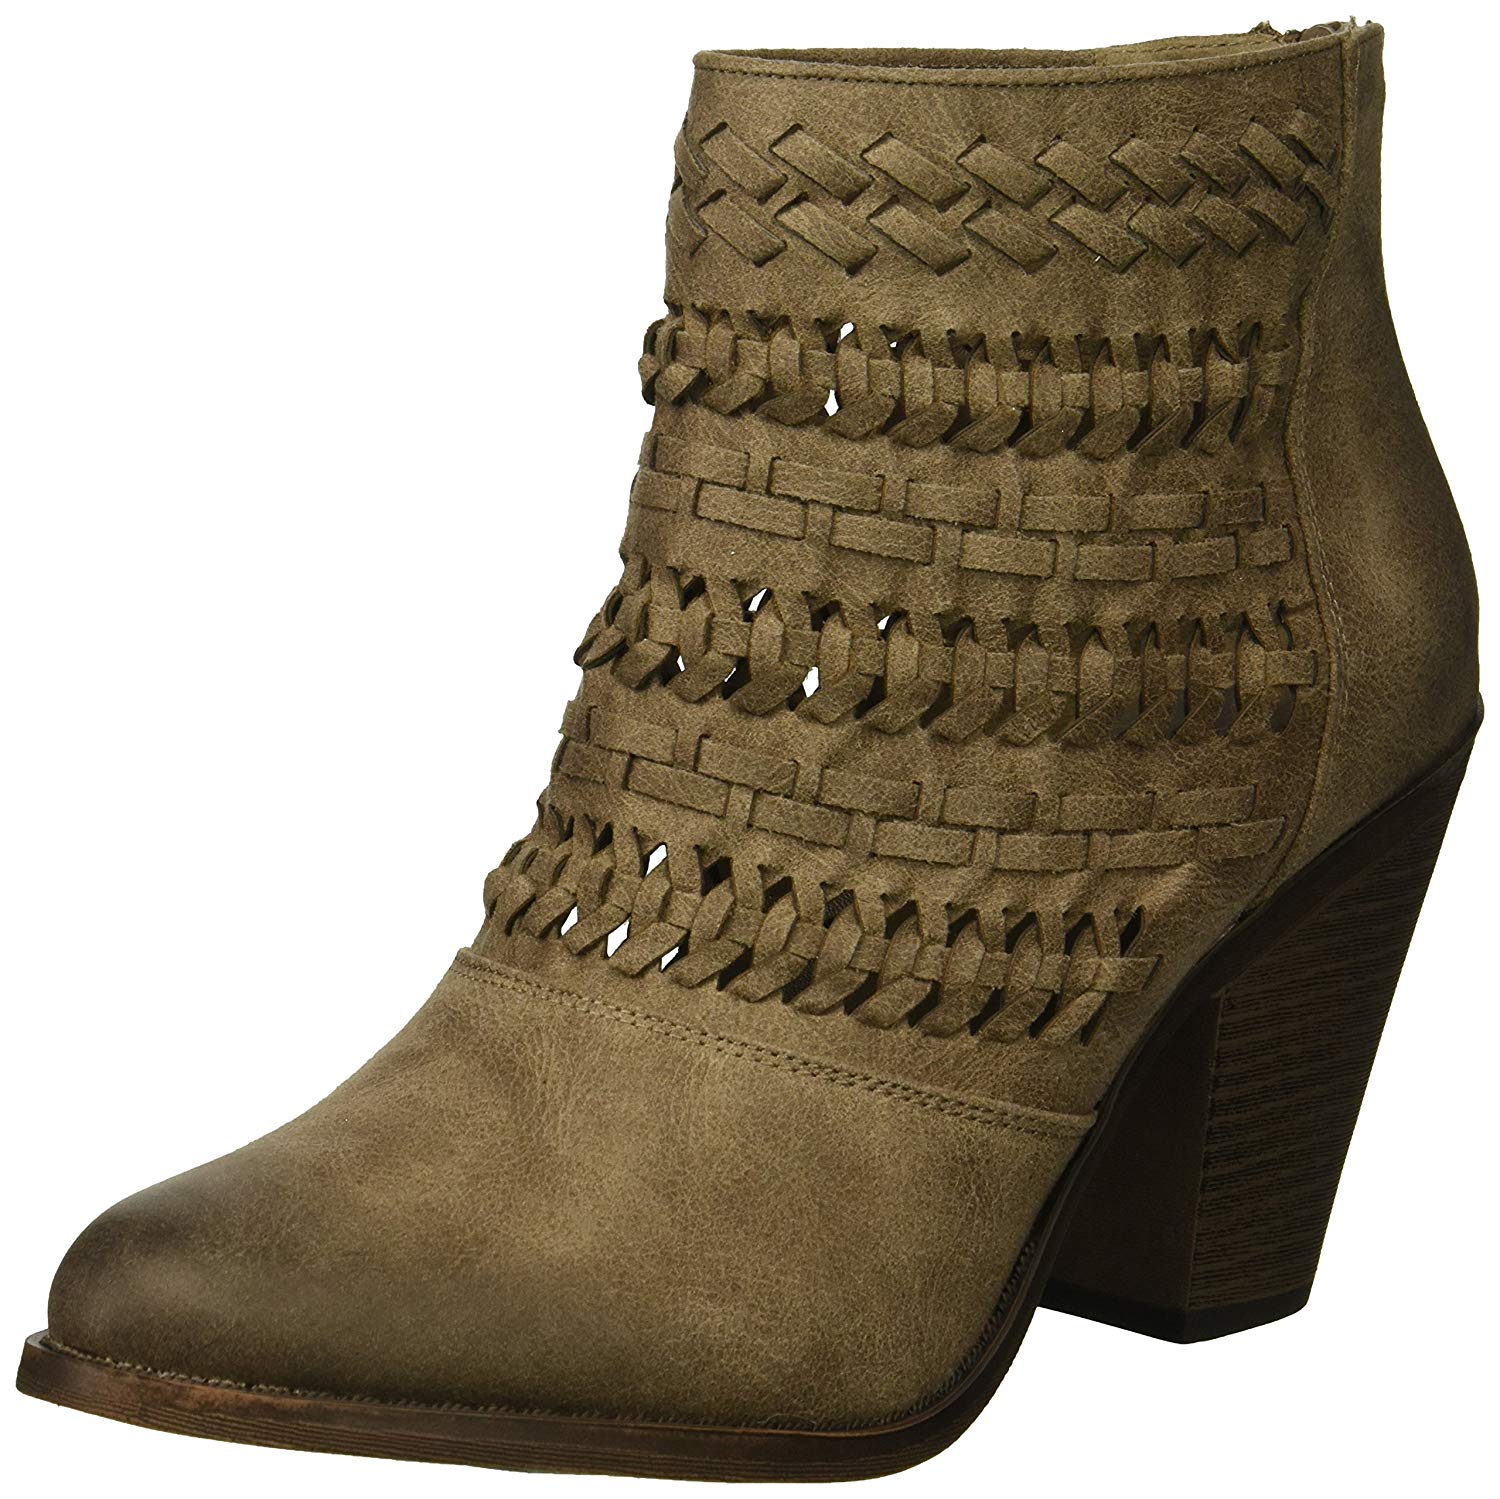 Fergalicious Wanderer Women's Boot, Doe, Size 11.0 7EdE | eBay